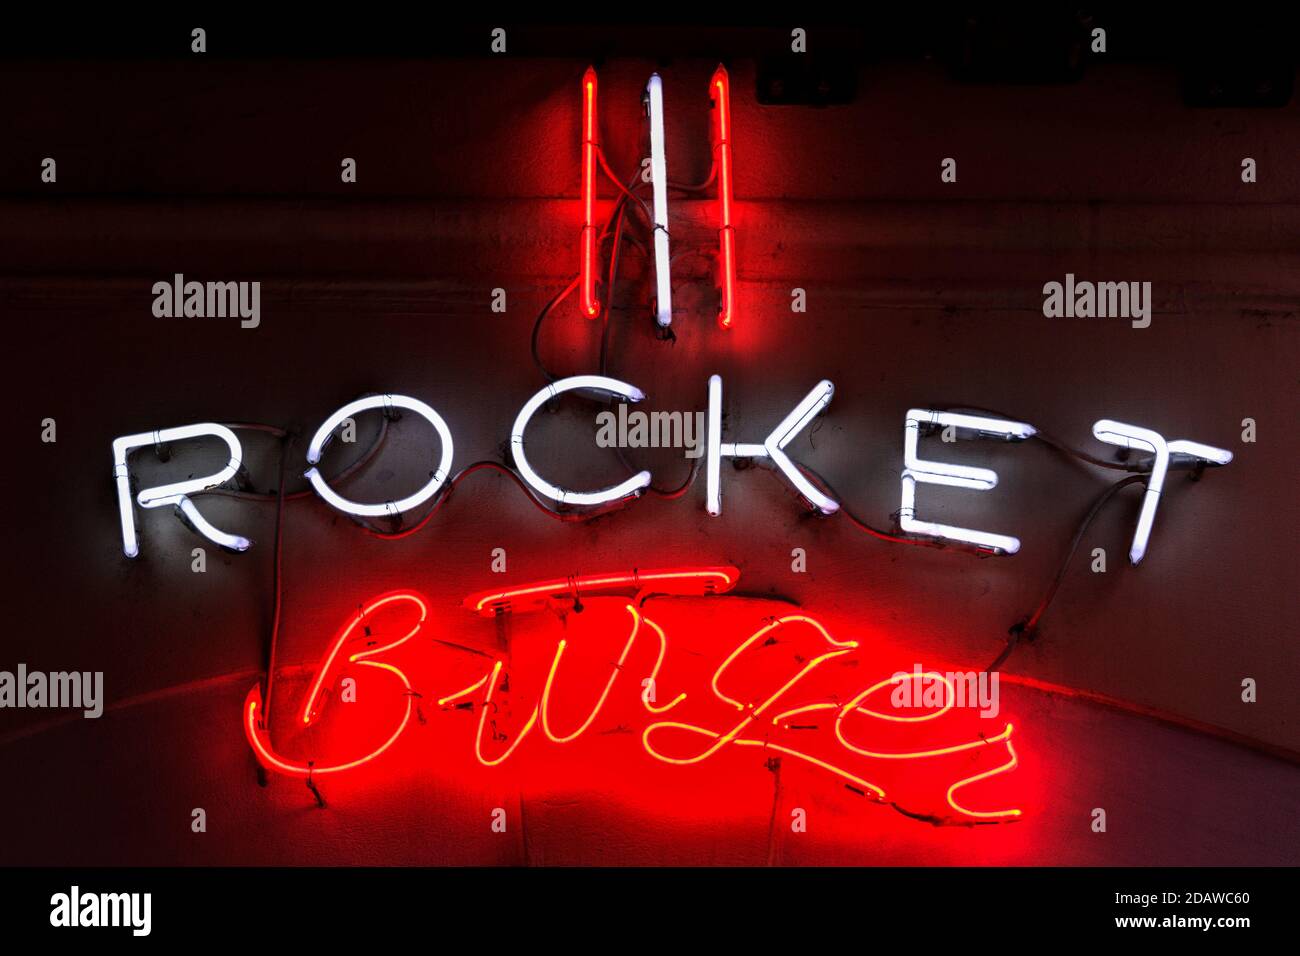 Rocket Burger, cartello rosso e bianco al neon su sfondo scuro, primo piano, dettaglio. Foto Stock